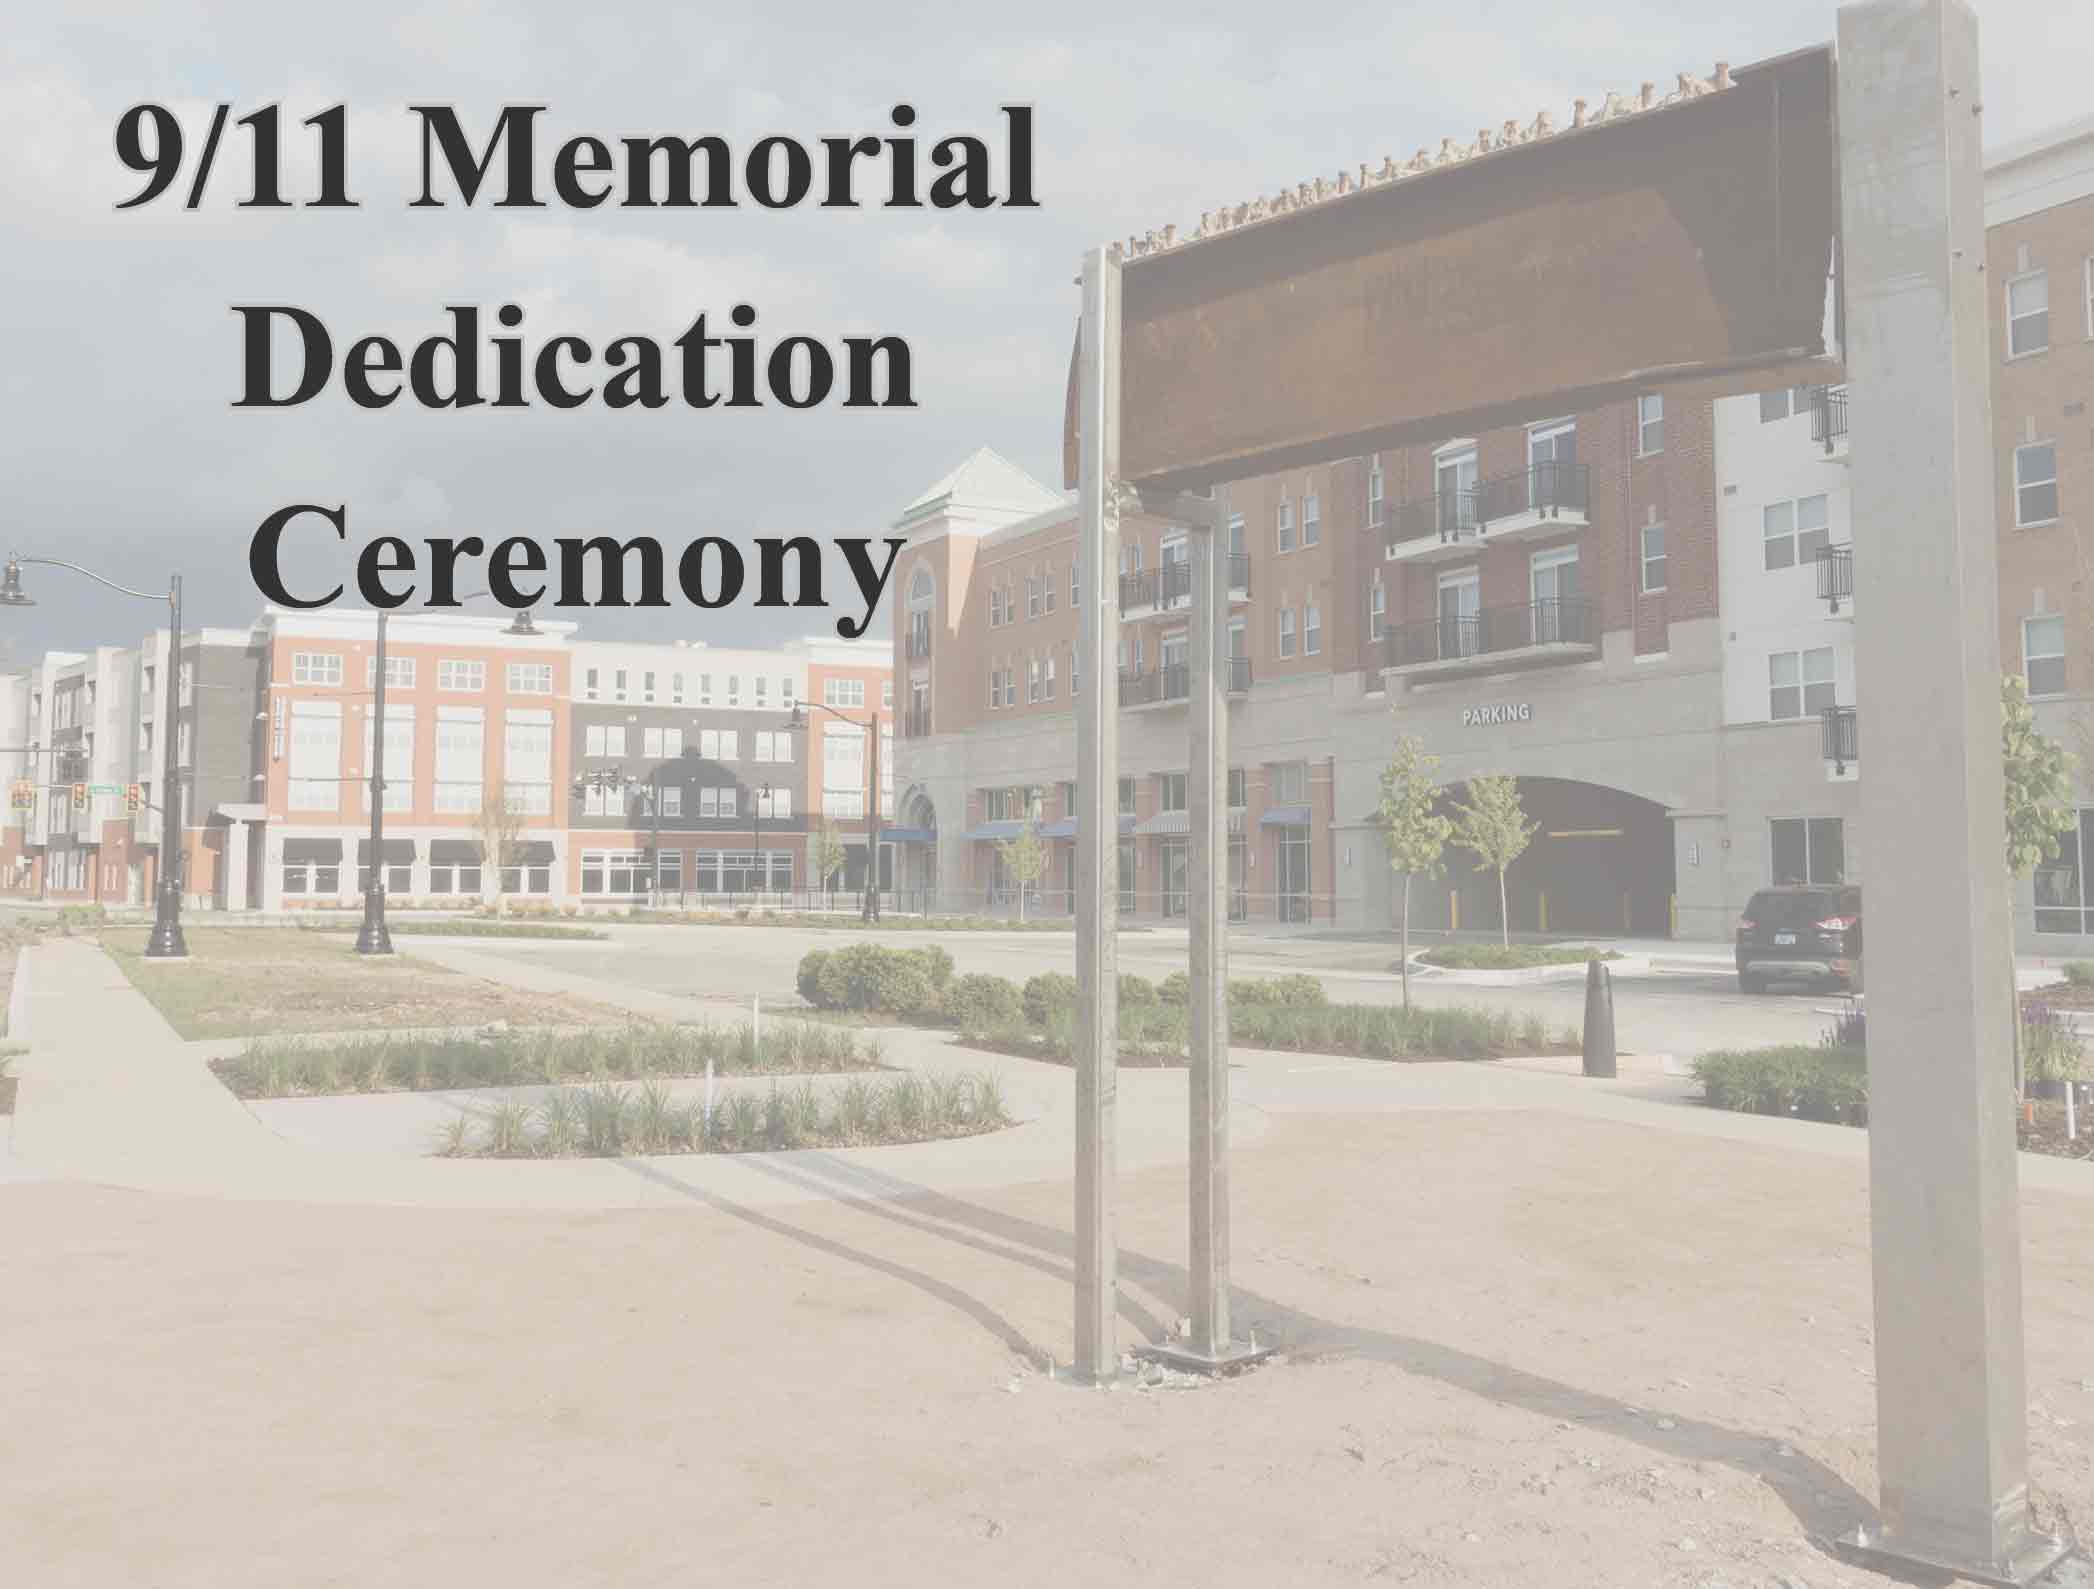 Brownsburg 9/11 Memorial Dedication Ceremony